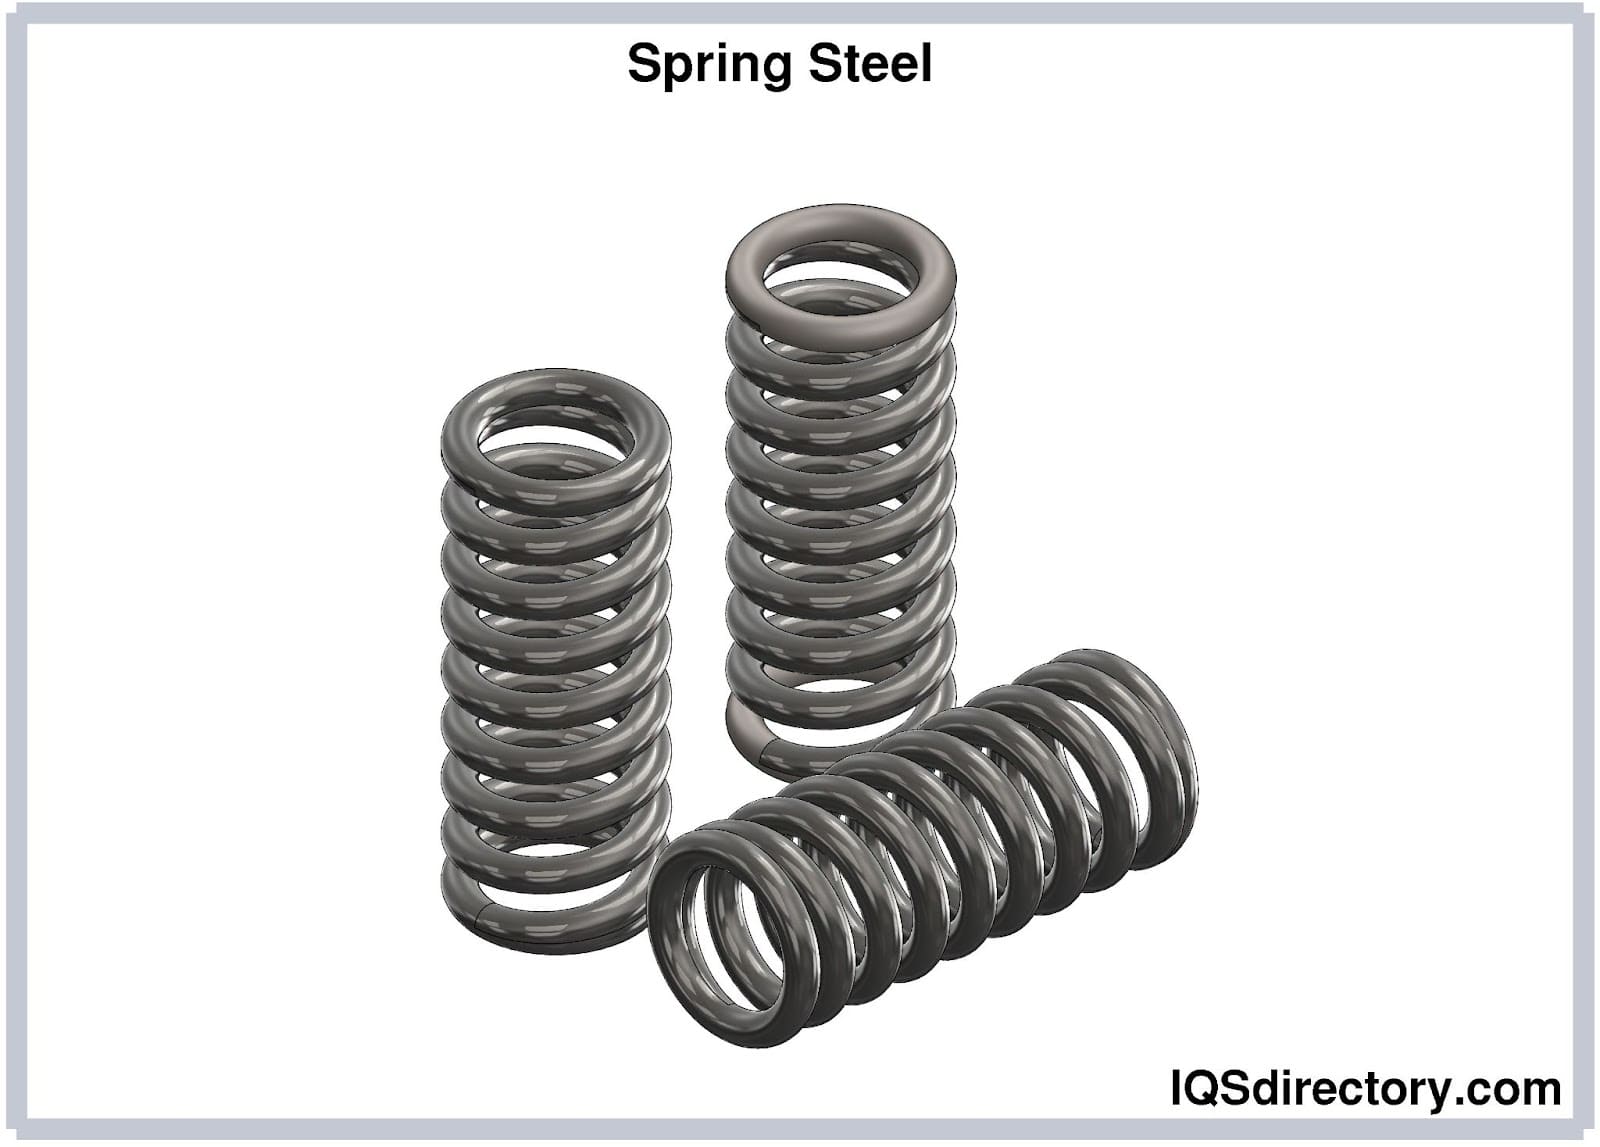 Spring Steel